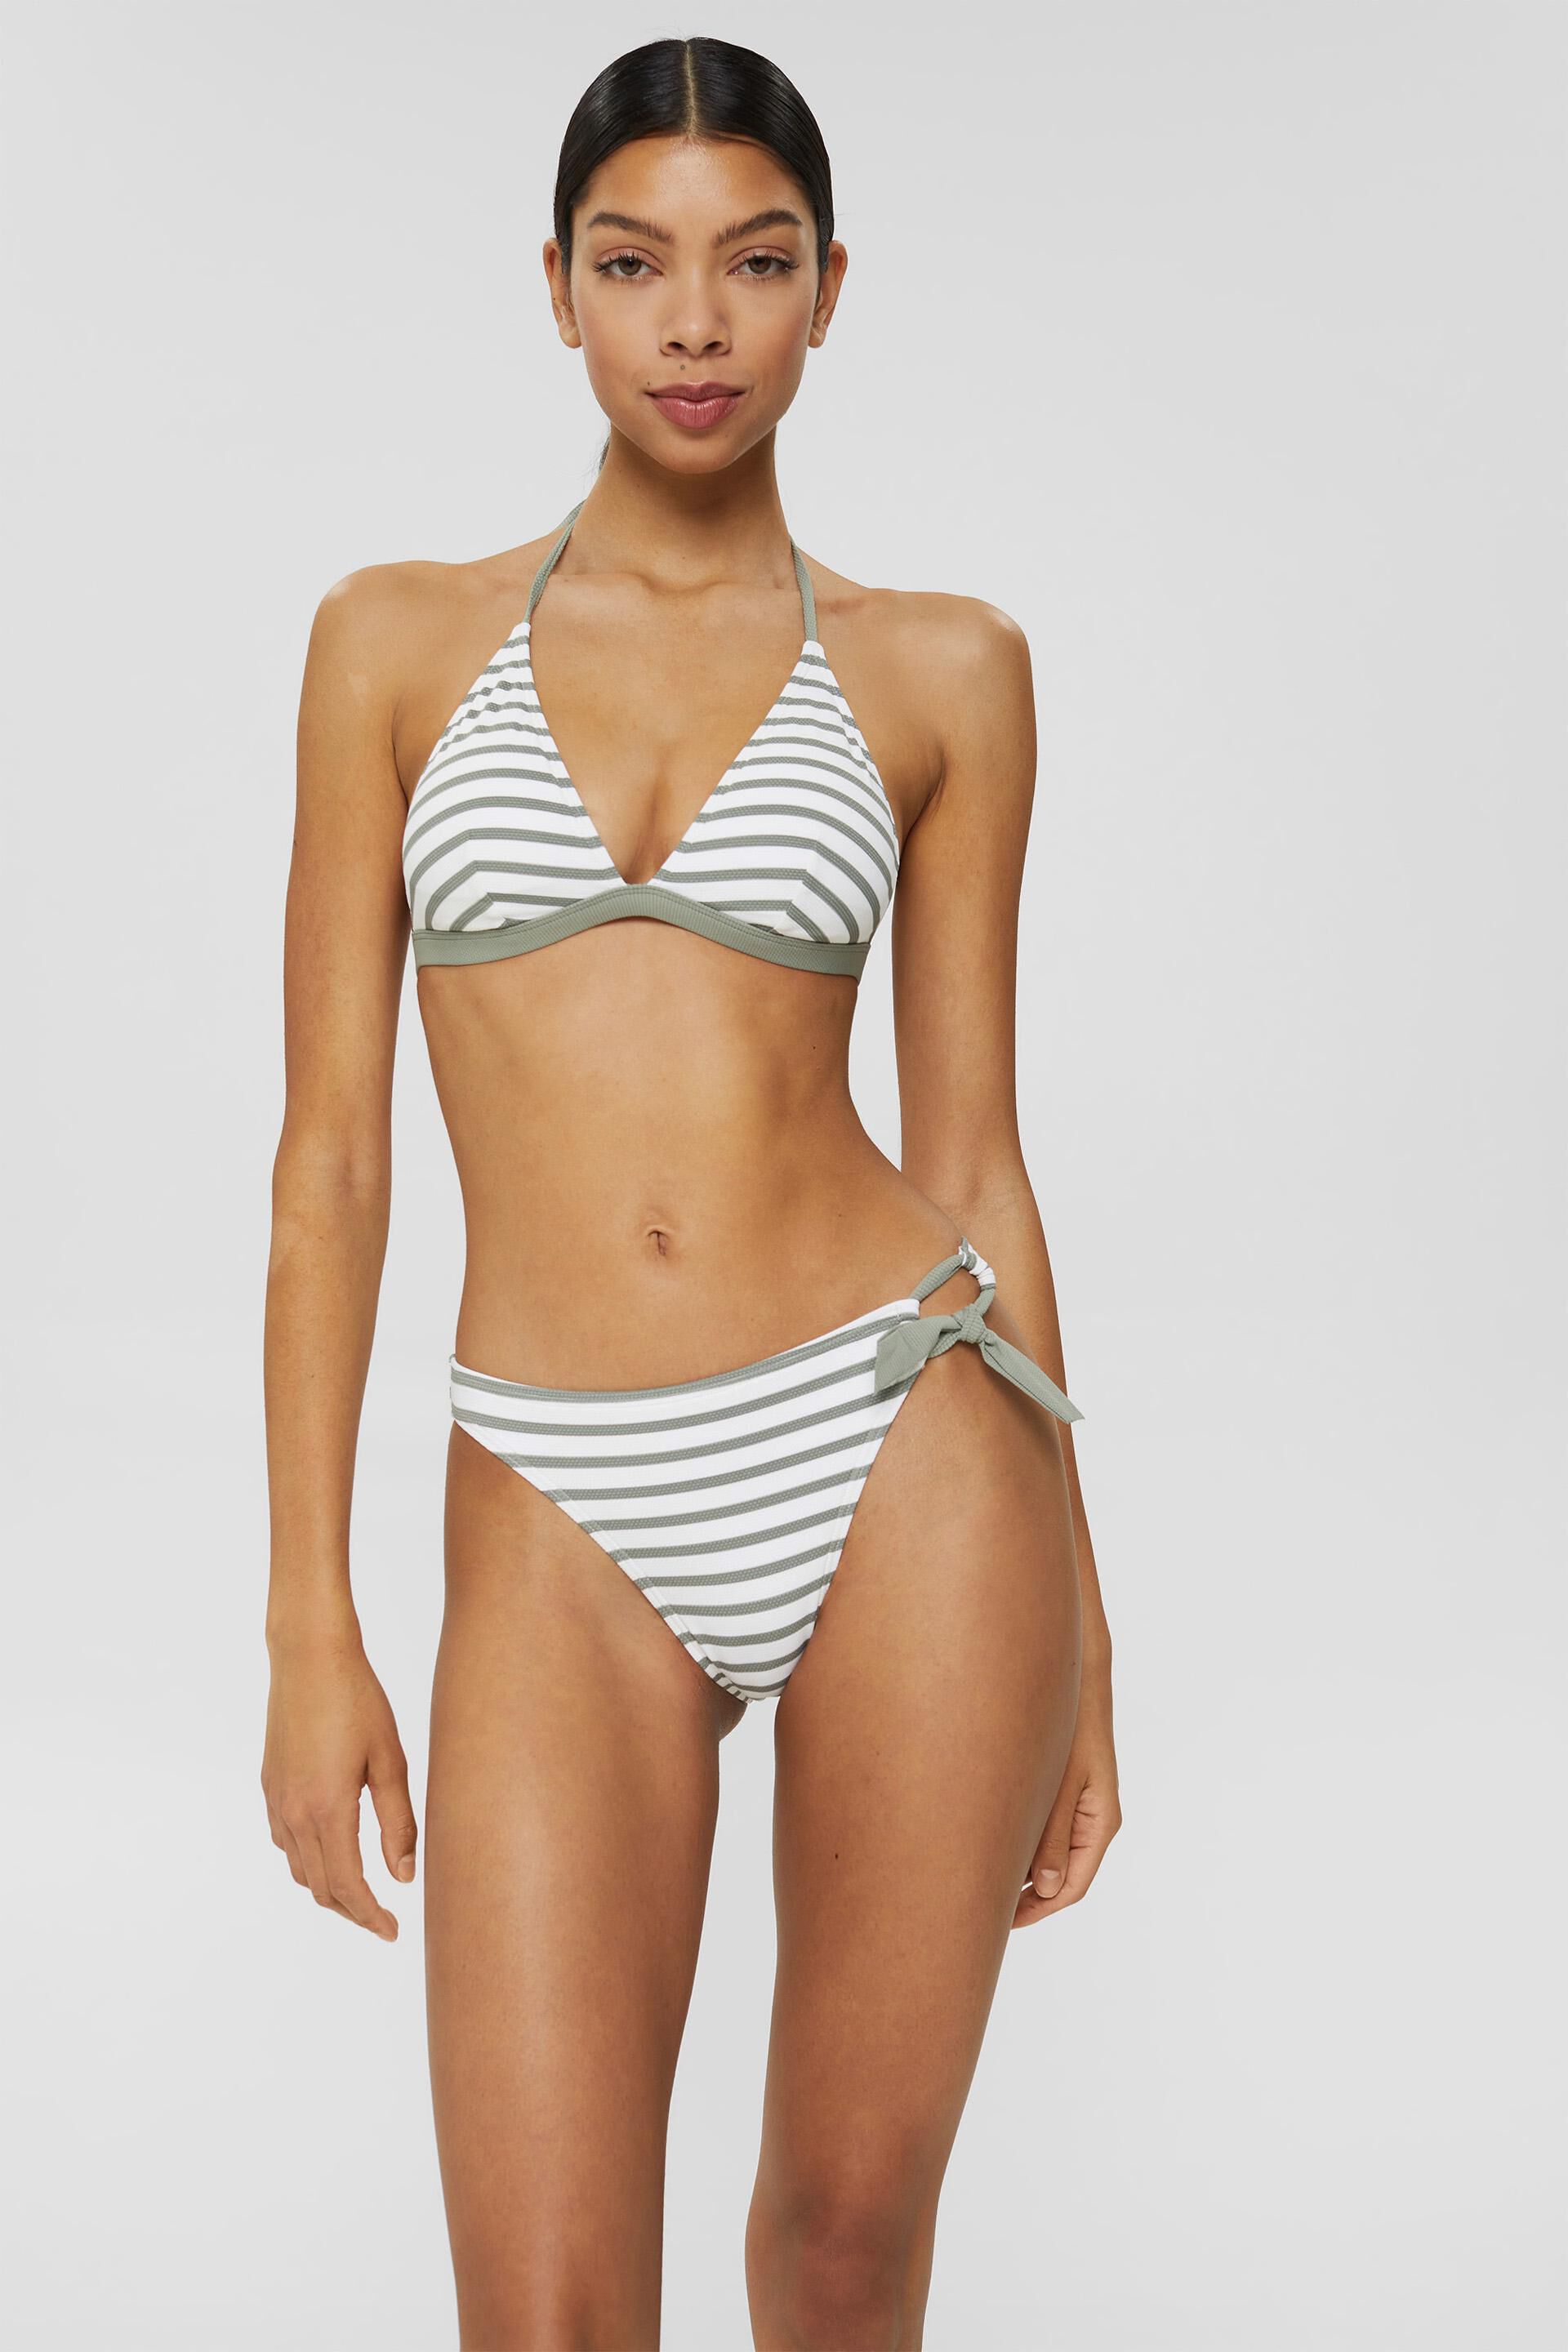 ESPRIT Women's Ocean Beach Ay Padded Top Bikini